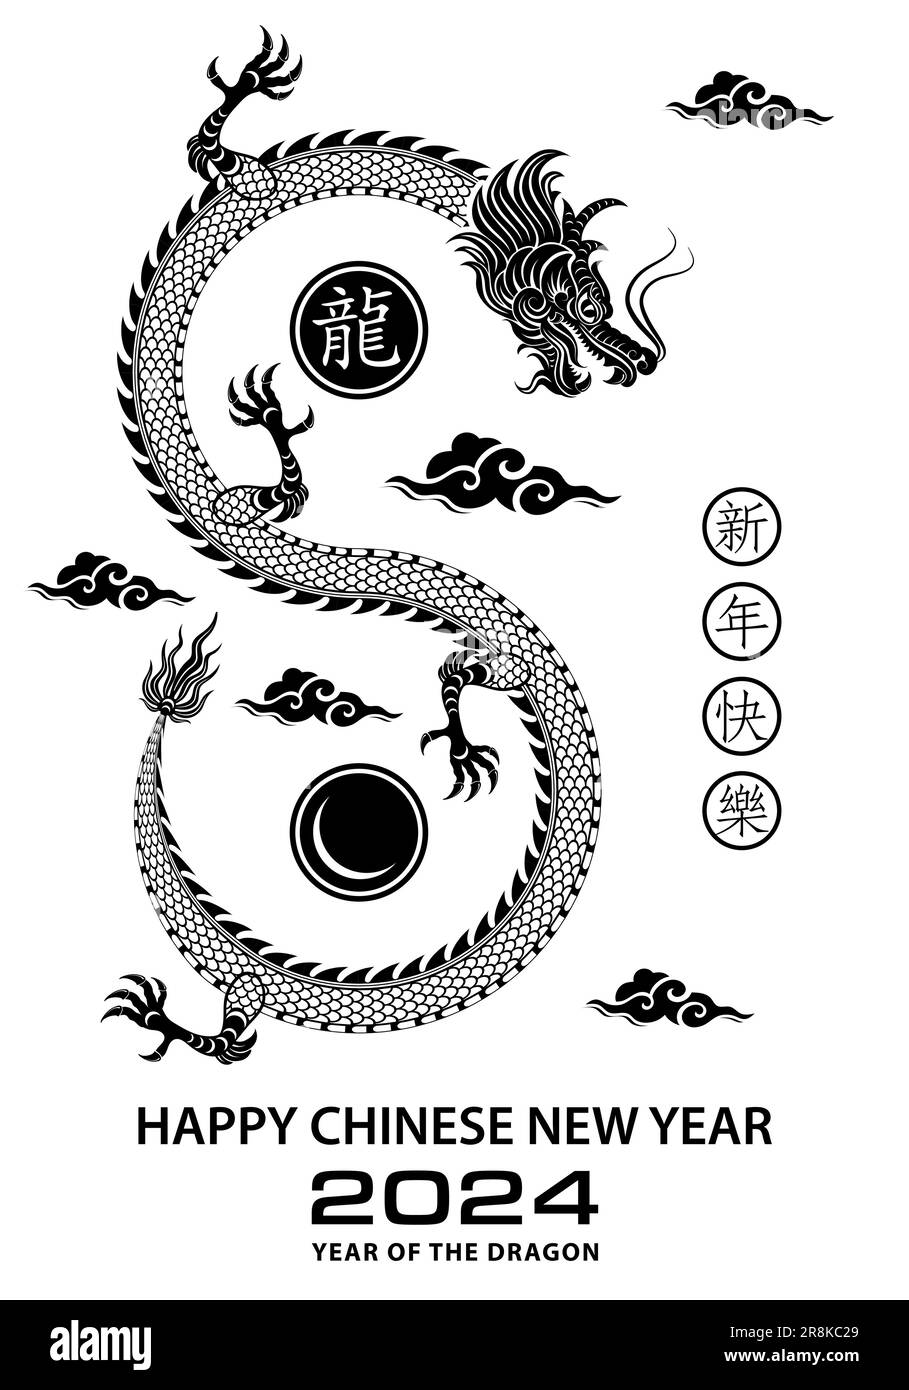 Feliz año nuevo chino 2024 signo del zodiaco, año del dragón, con papel